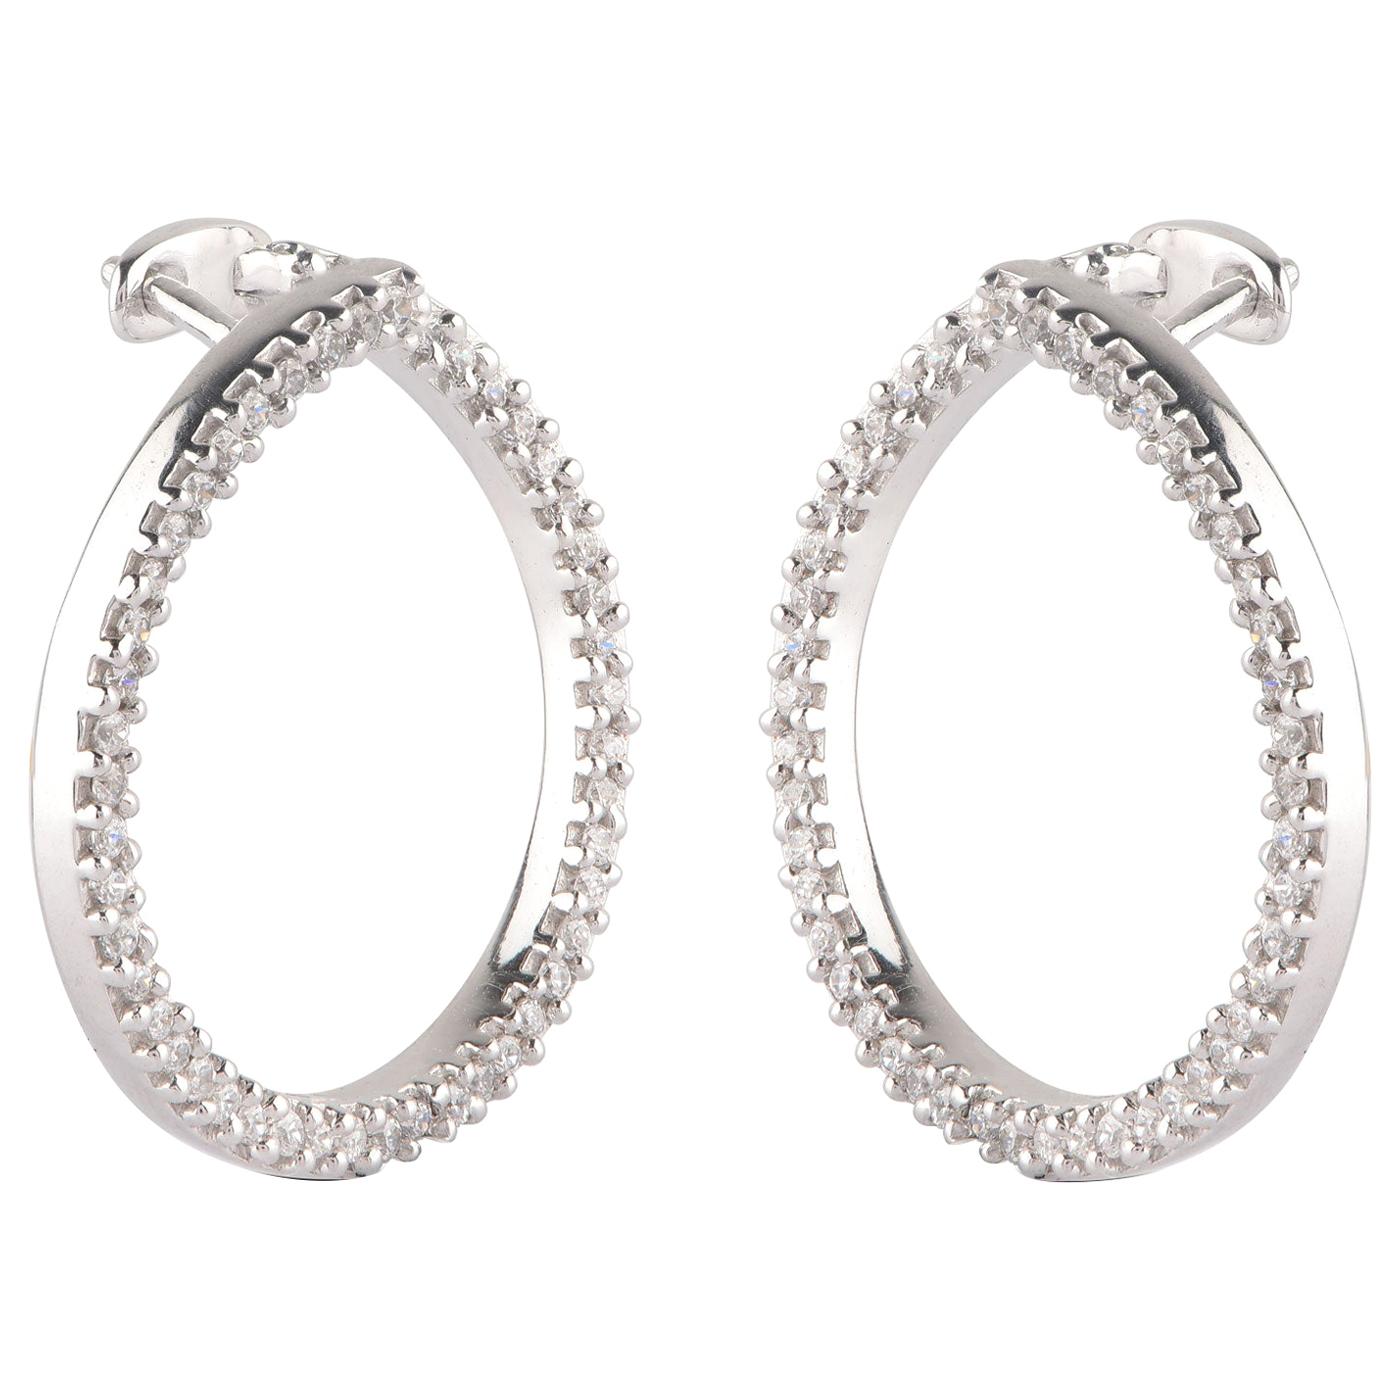 Diamond Edge Twist Hoop Earrings, 18 Karat White Gold, by Liv Luttrell ...